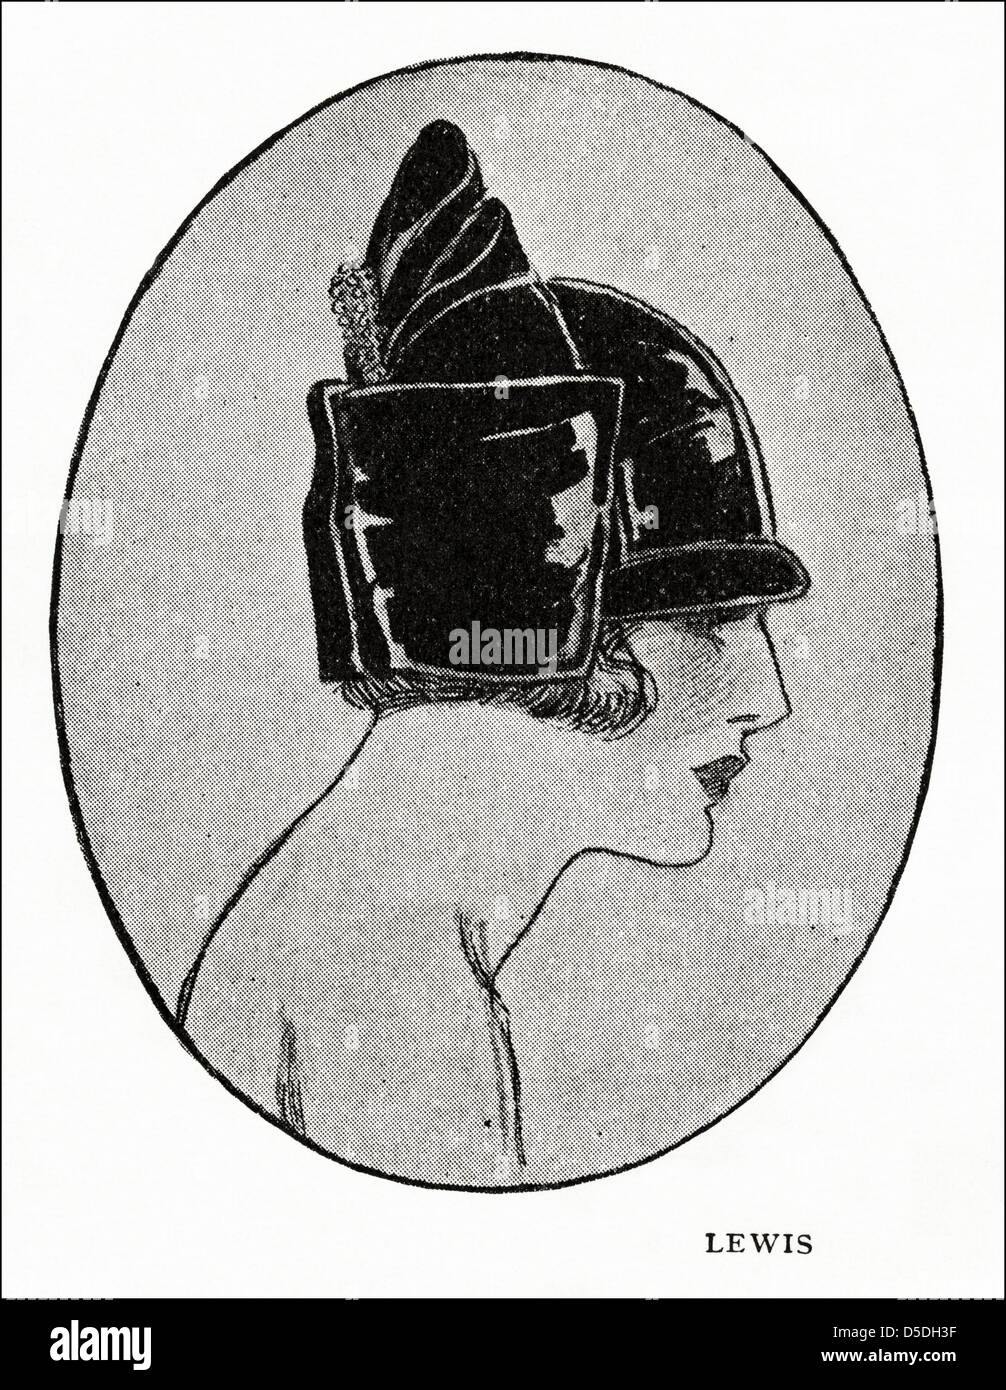 La moda de París de 1923 por el diseñador de Lewis. Sombrero de terciopelo negro con un adorno de Strass y turquesa. Foto de stock